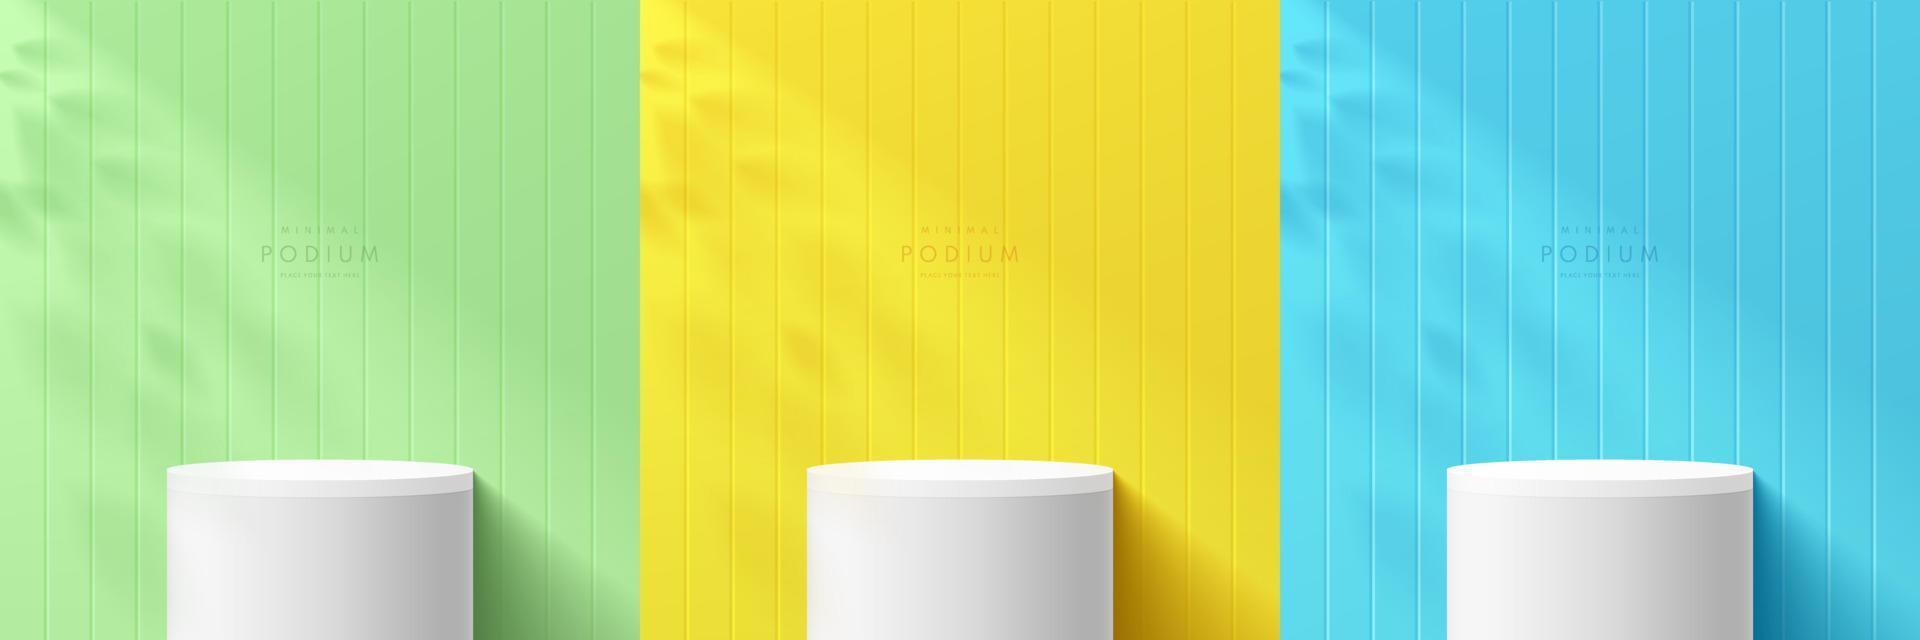 conjunto de podio de cilindro 3d blanco realista en una escena de color amarillo pastel, azul y verde con superposición de sombra de hoja. escena mínima abstracta para exhibición de productos de maqueta, escenario para exhibición. formas geométricas vectoriales. vector